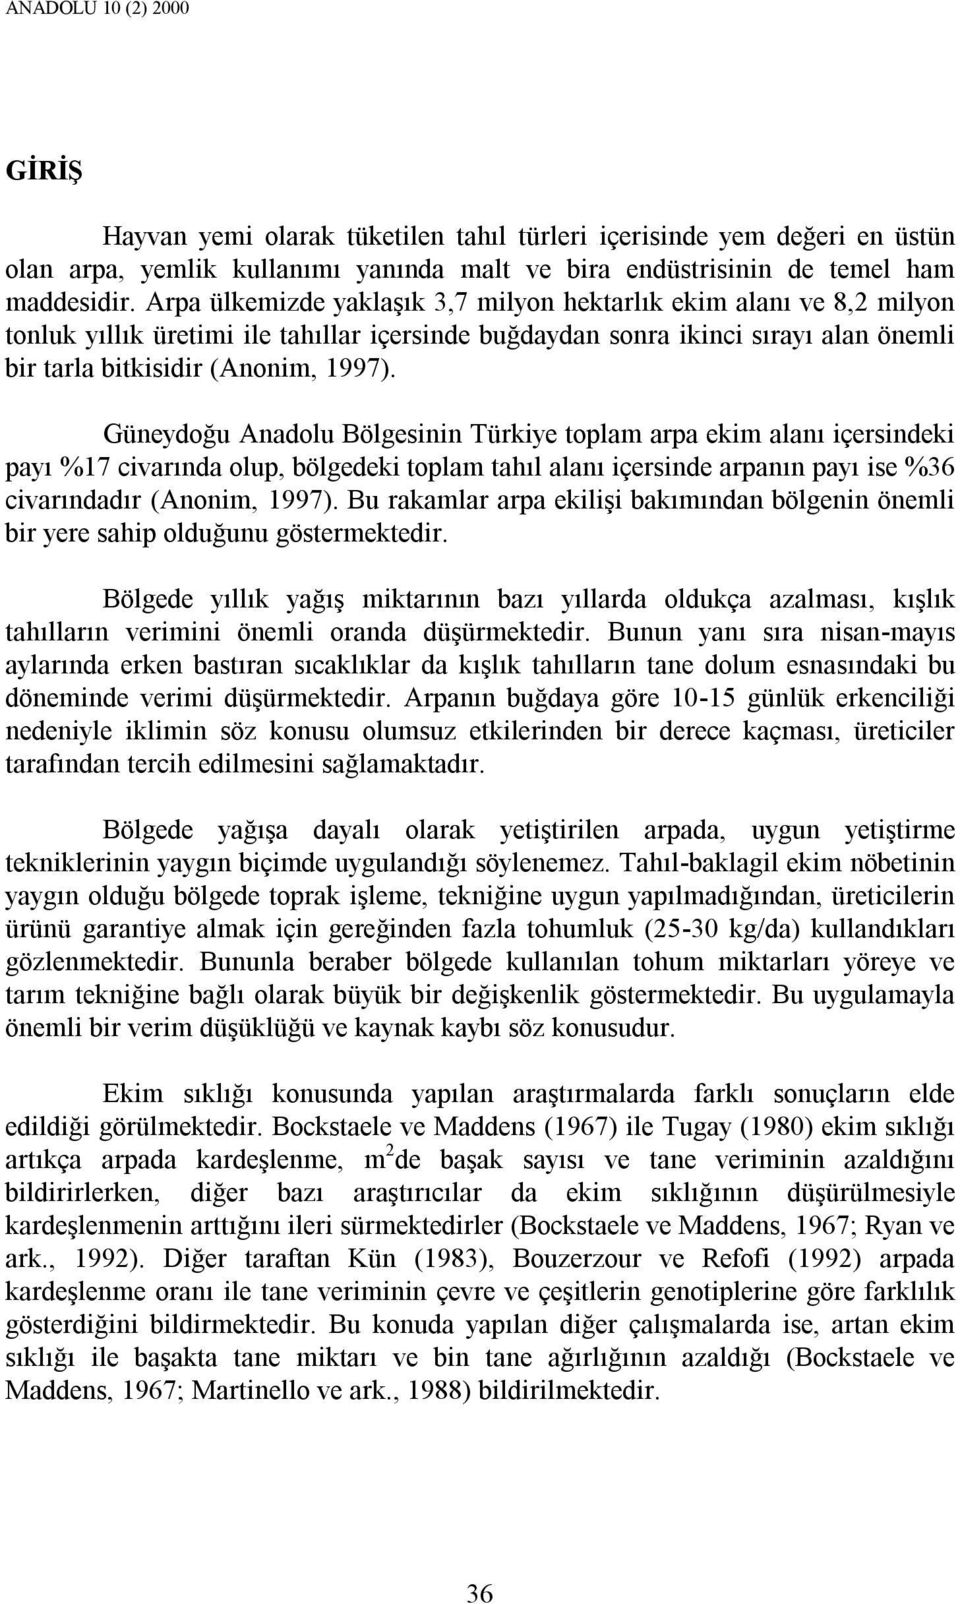 Güneydoğu Anadolu Bölgesinin Türkiye toplam arpa ekim alanı içersindeki payı %17 civarında olup, bölgedeki toplam tahıl alanı içersinde arpanın payı ise %36 civarındadır (Anonim, 1997).